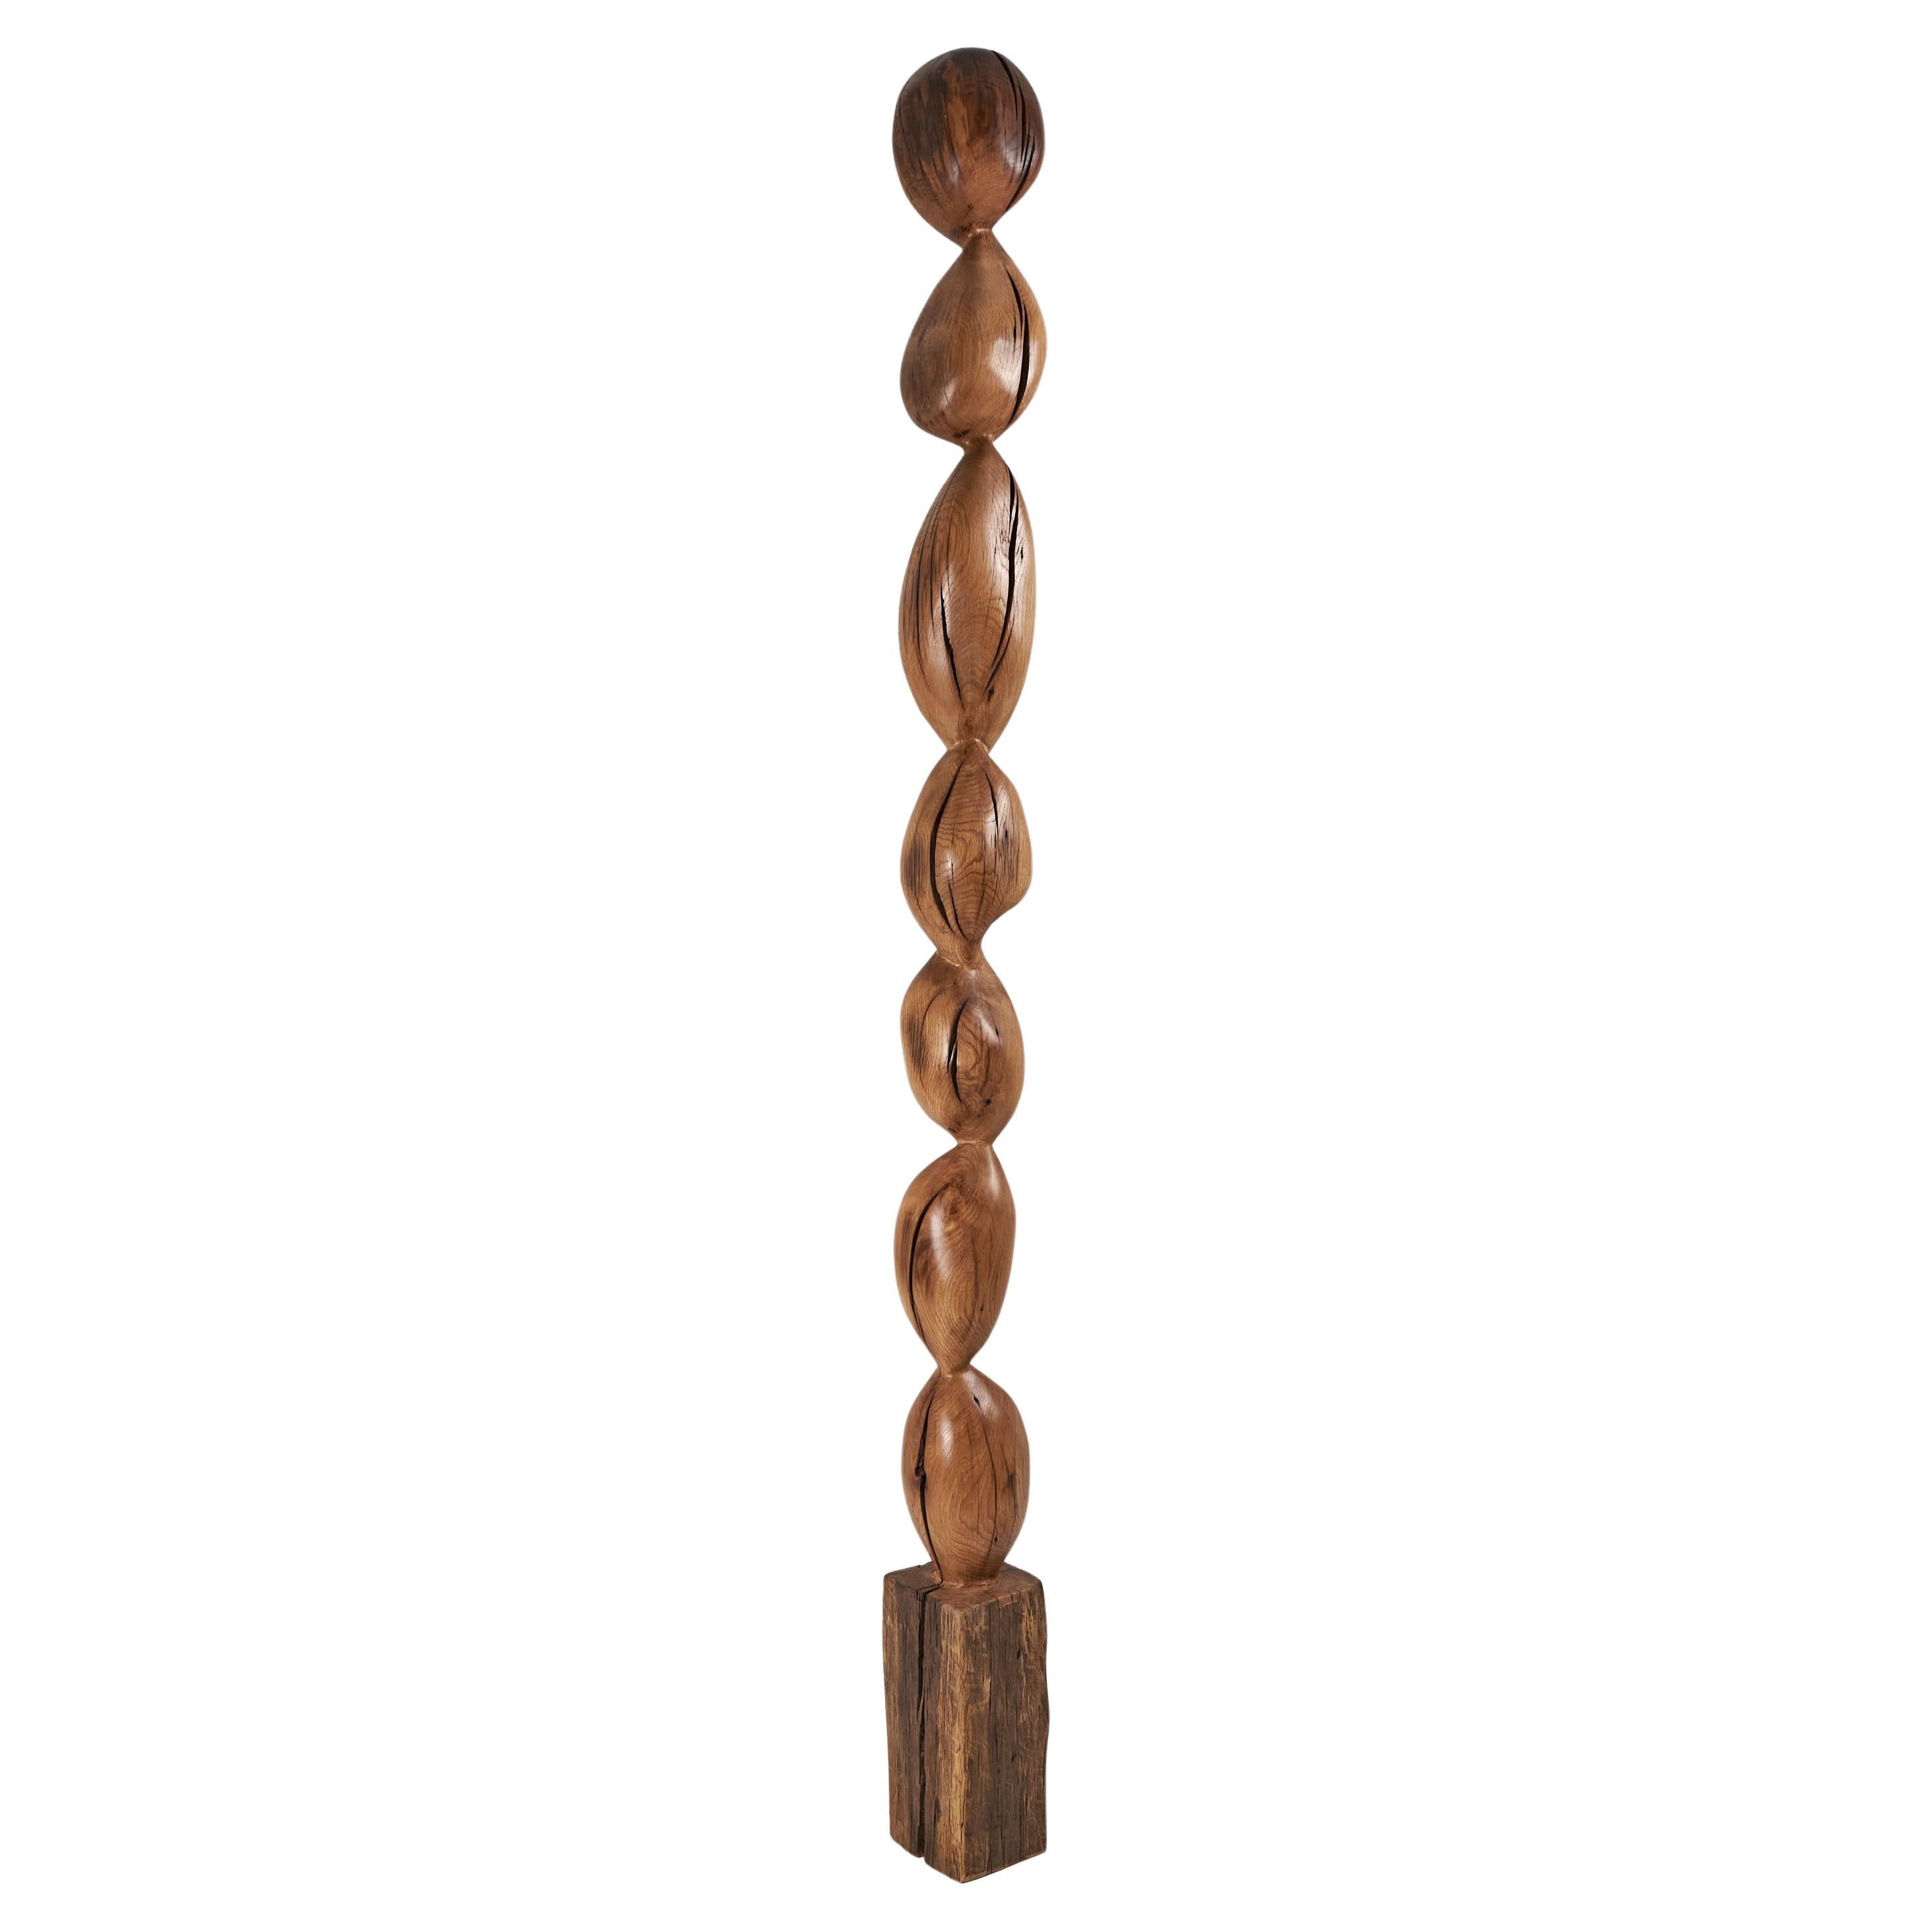 Still Stand Sculpture abstraite biomorphique en bois, sculptée à la tronçonneuse, XL en vente